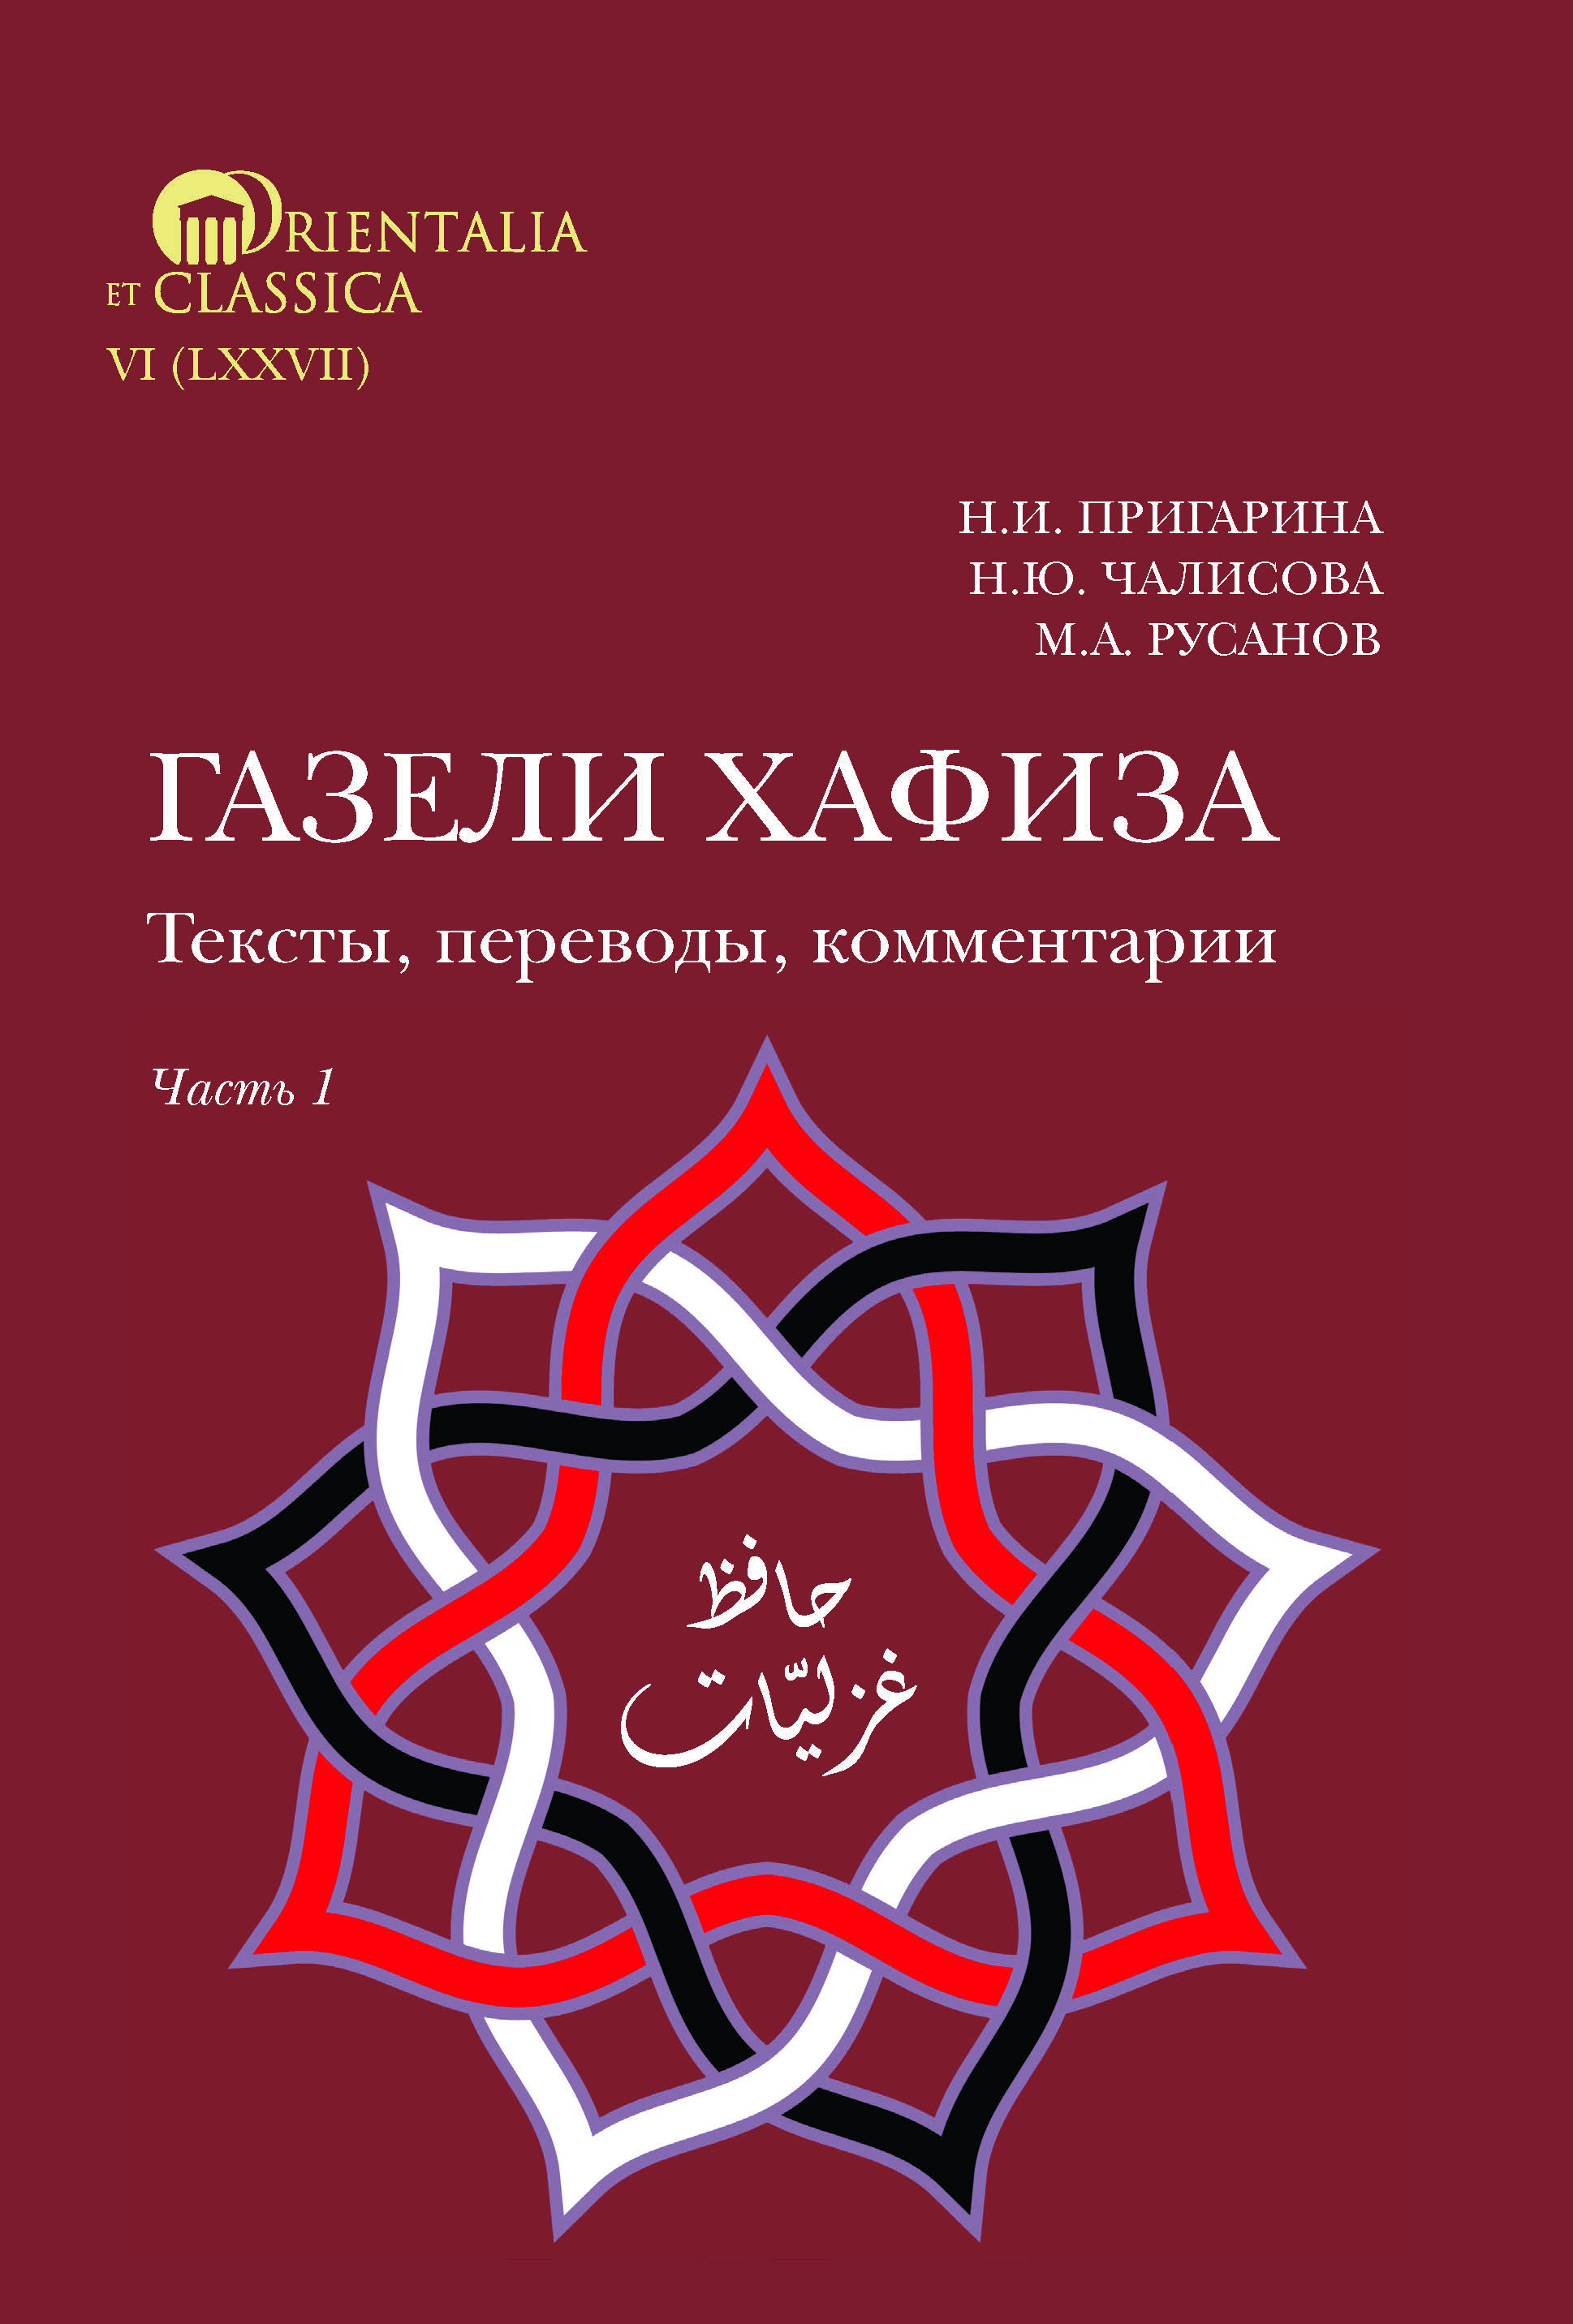 Газели Хафиза: тексты, переводы, комментарии